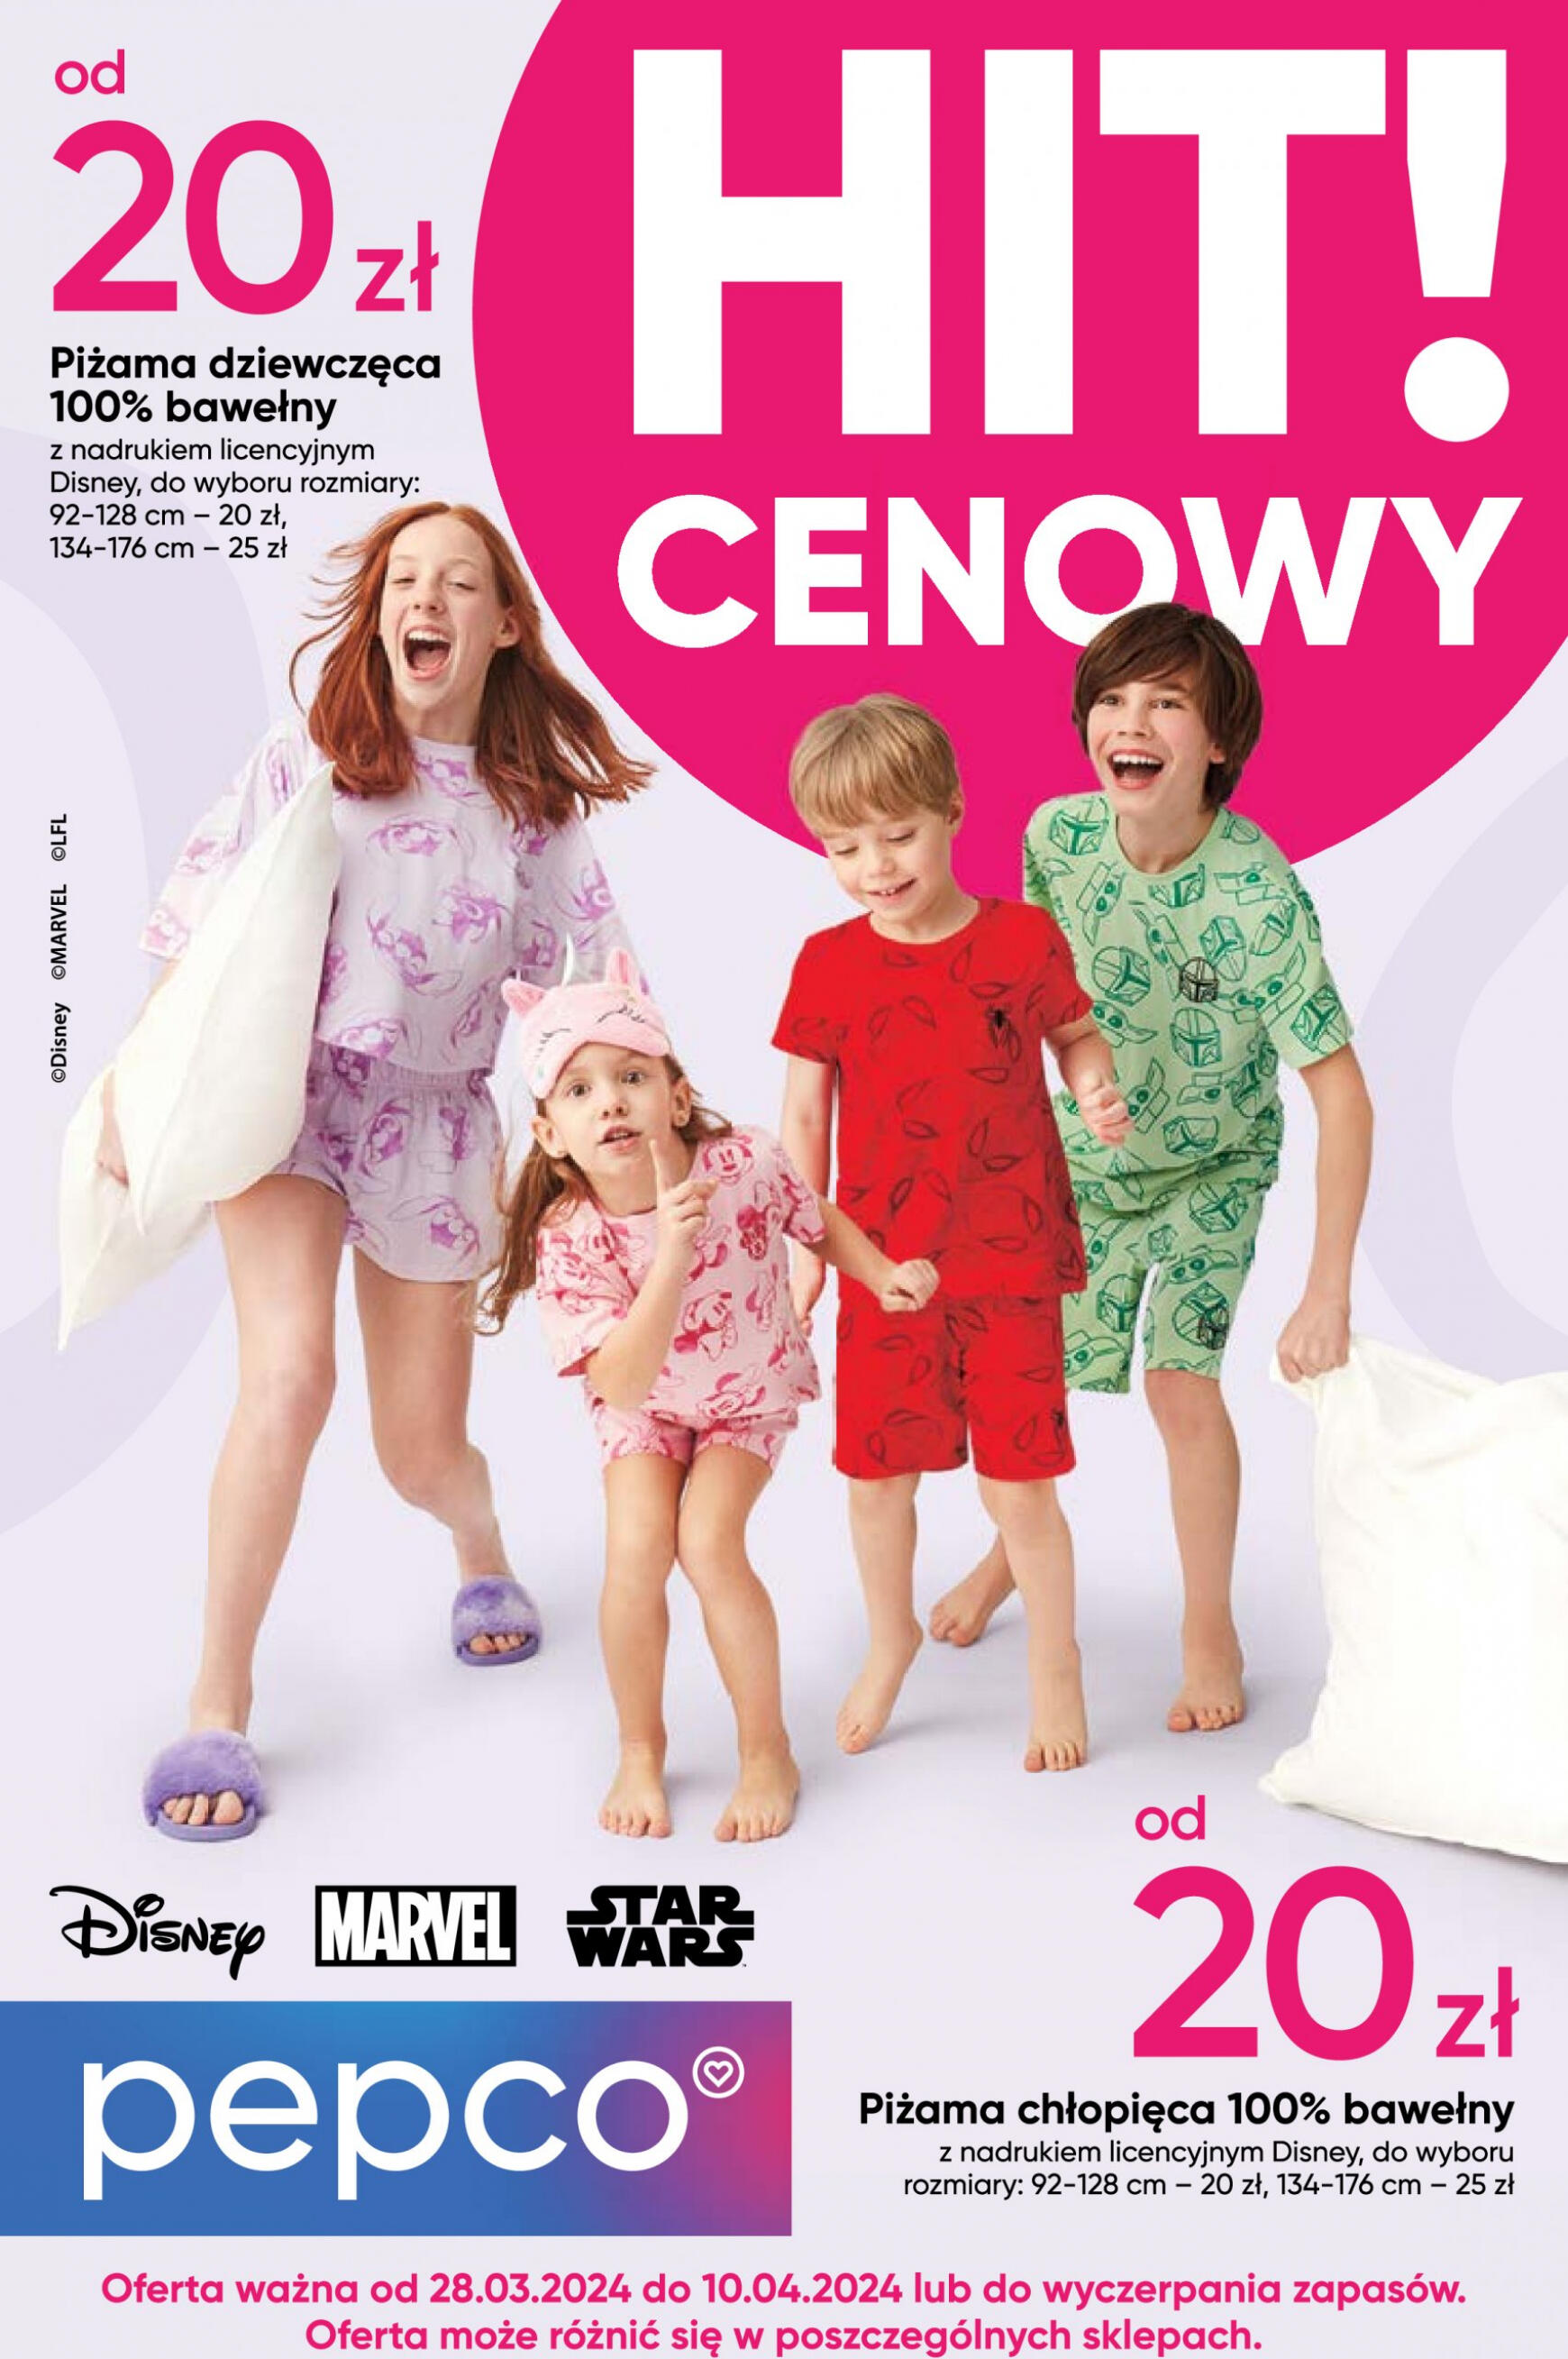 pepco - Pepco - Piżamy Disney obowiązuje od 28.03.2024 - page: 1